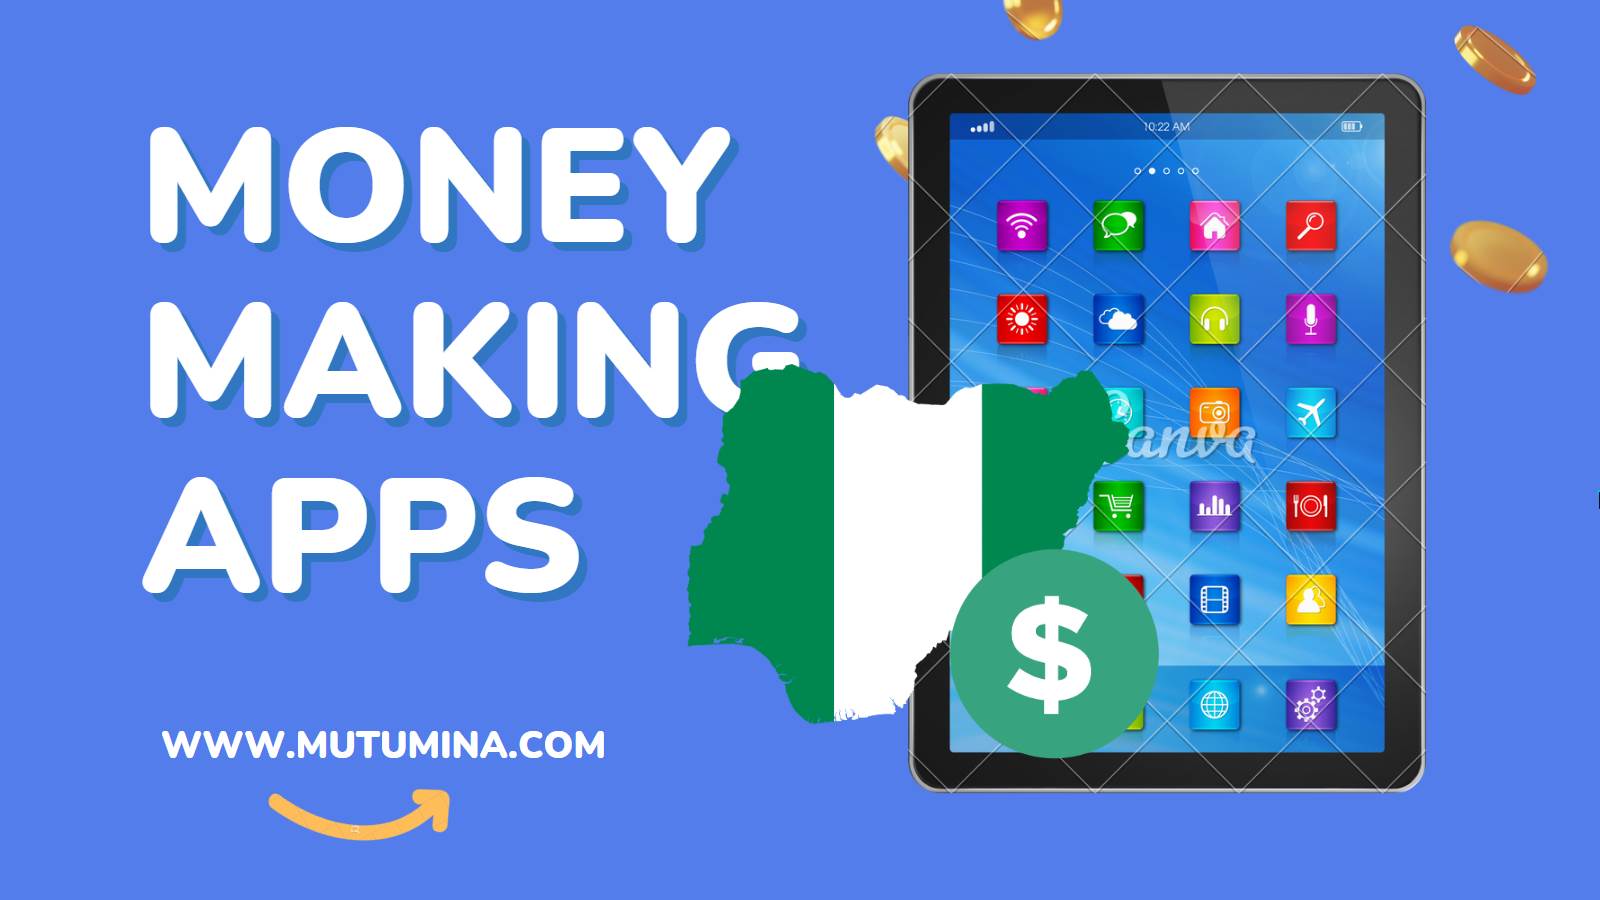 Money Making Apps In Nigeria